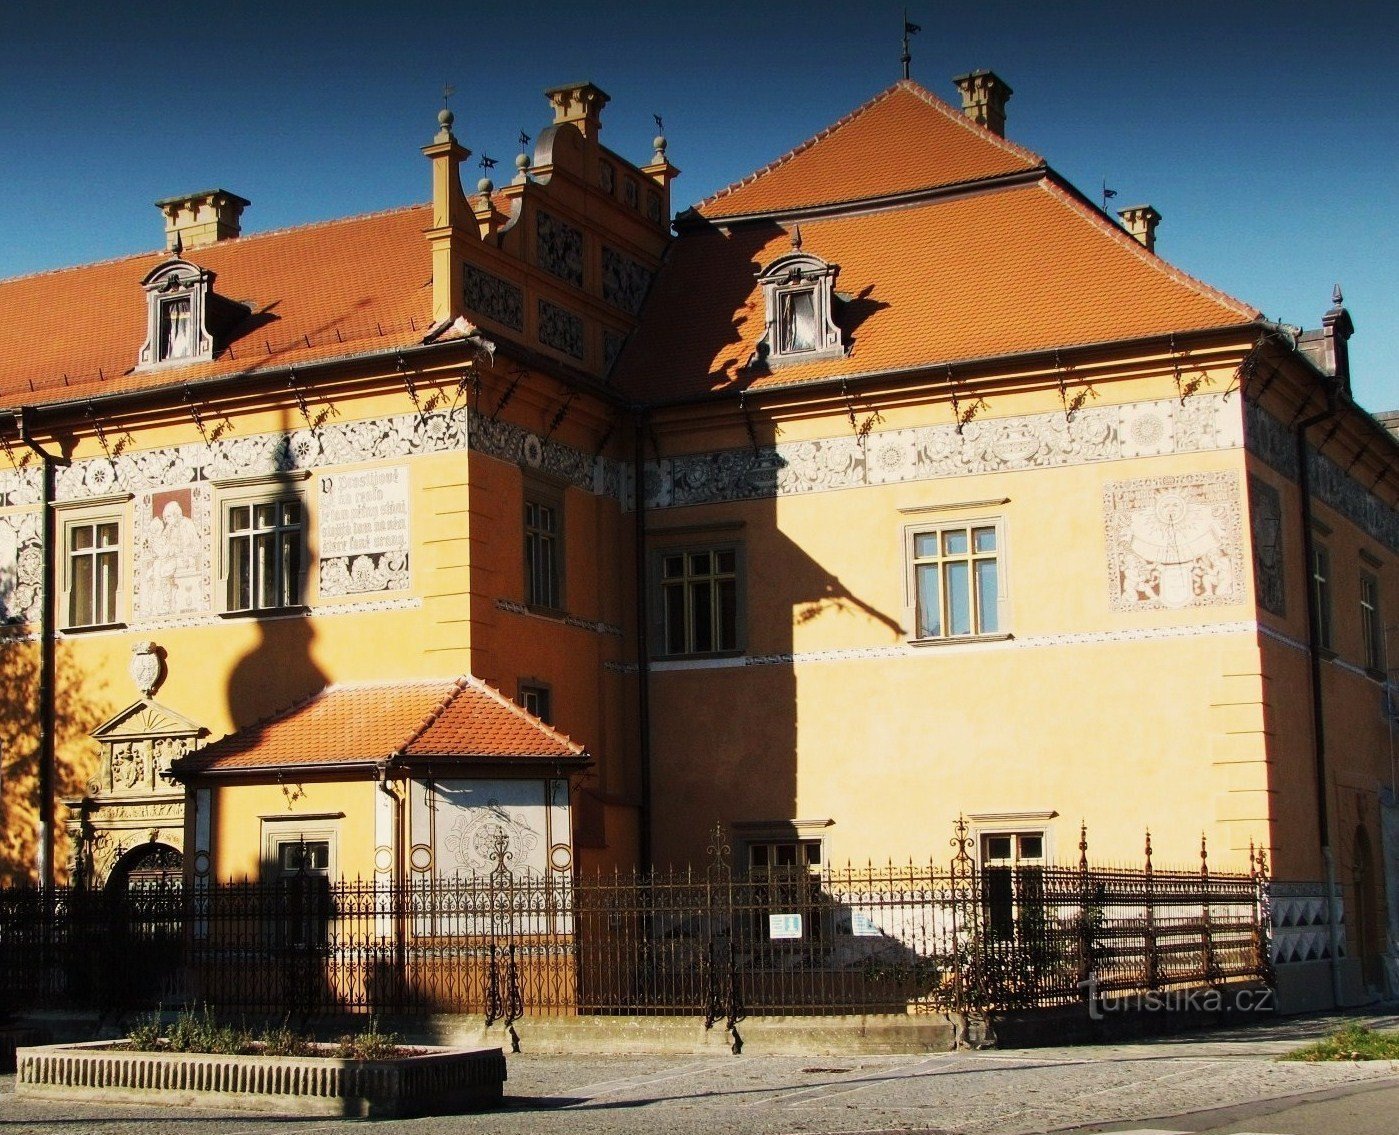 Marco de Prostějov - castelo renascentista